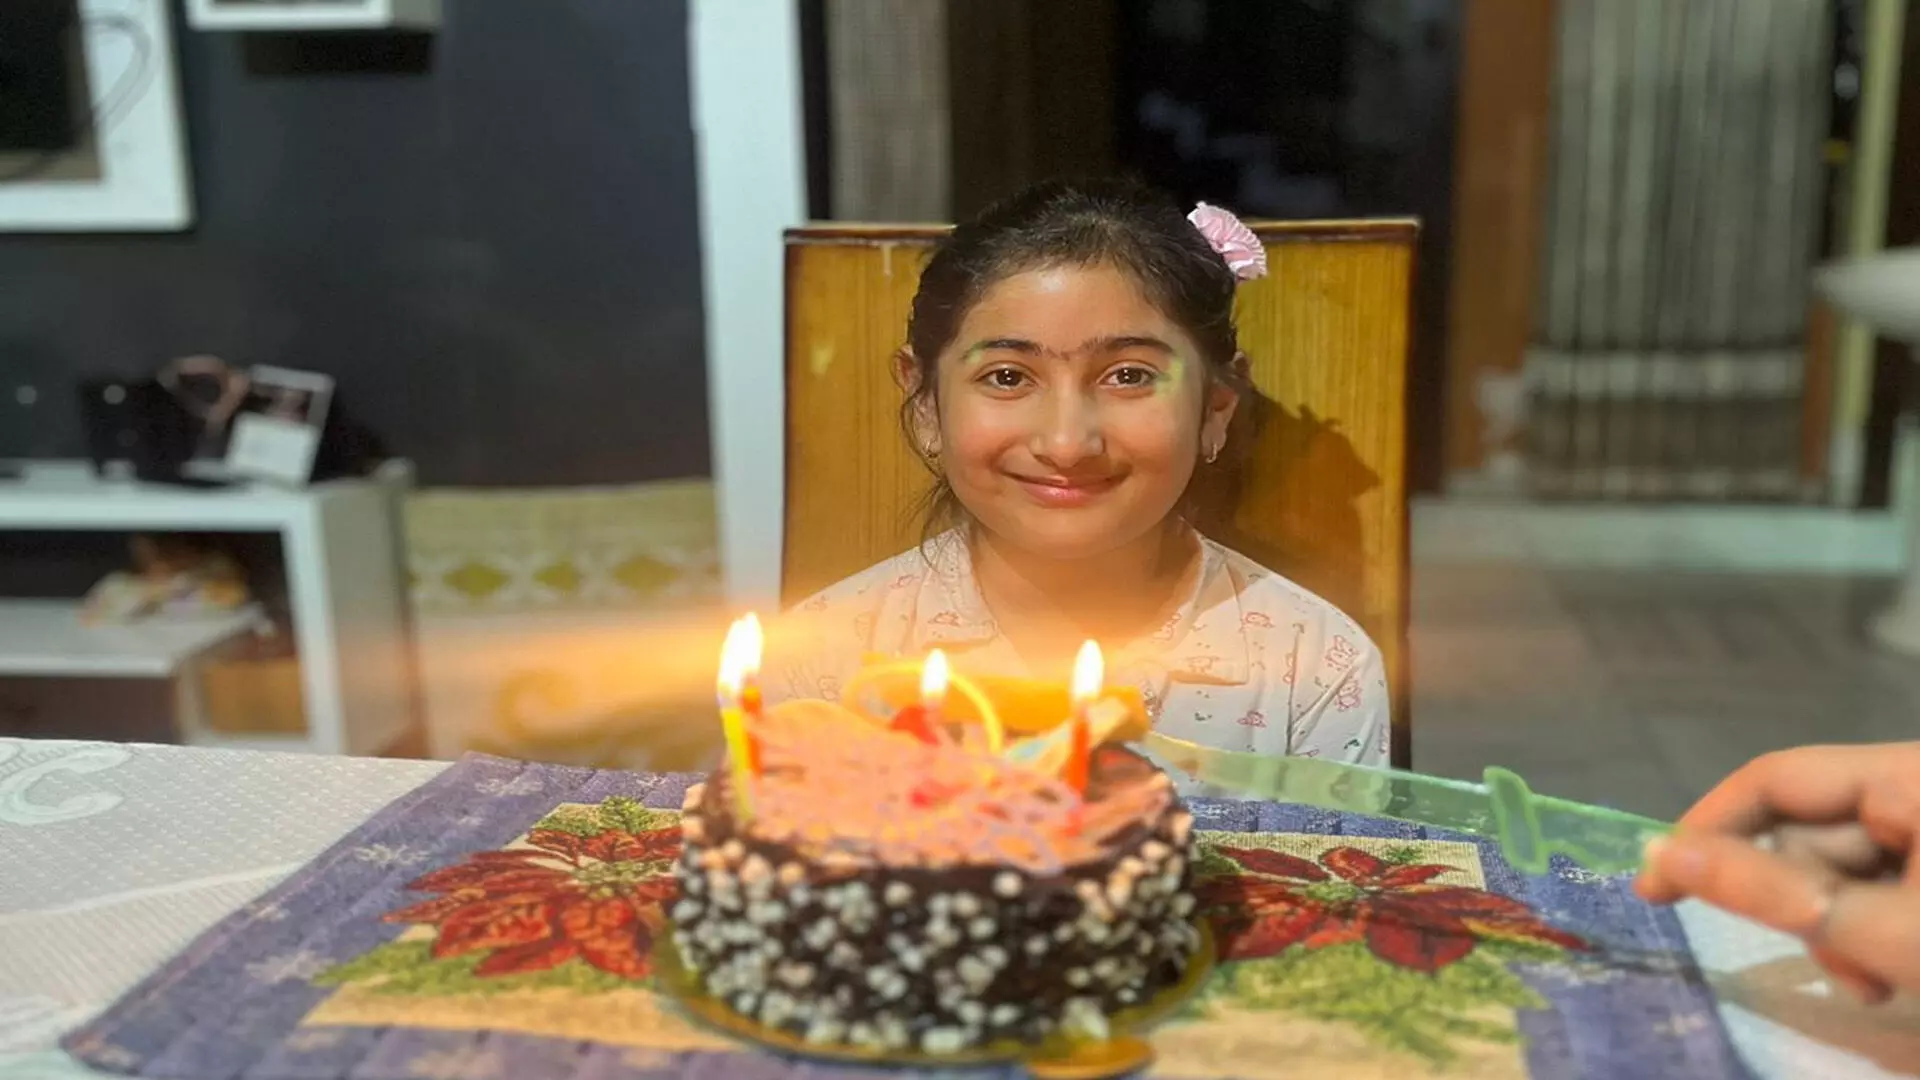 जन्मदिन बना मौत की वजह, केक खाने के बाद 10 वर्षीय बच्ची की मौत